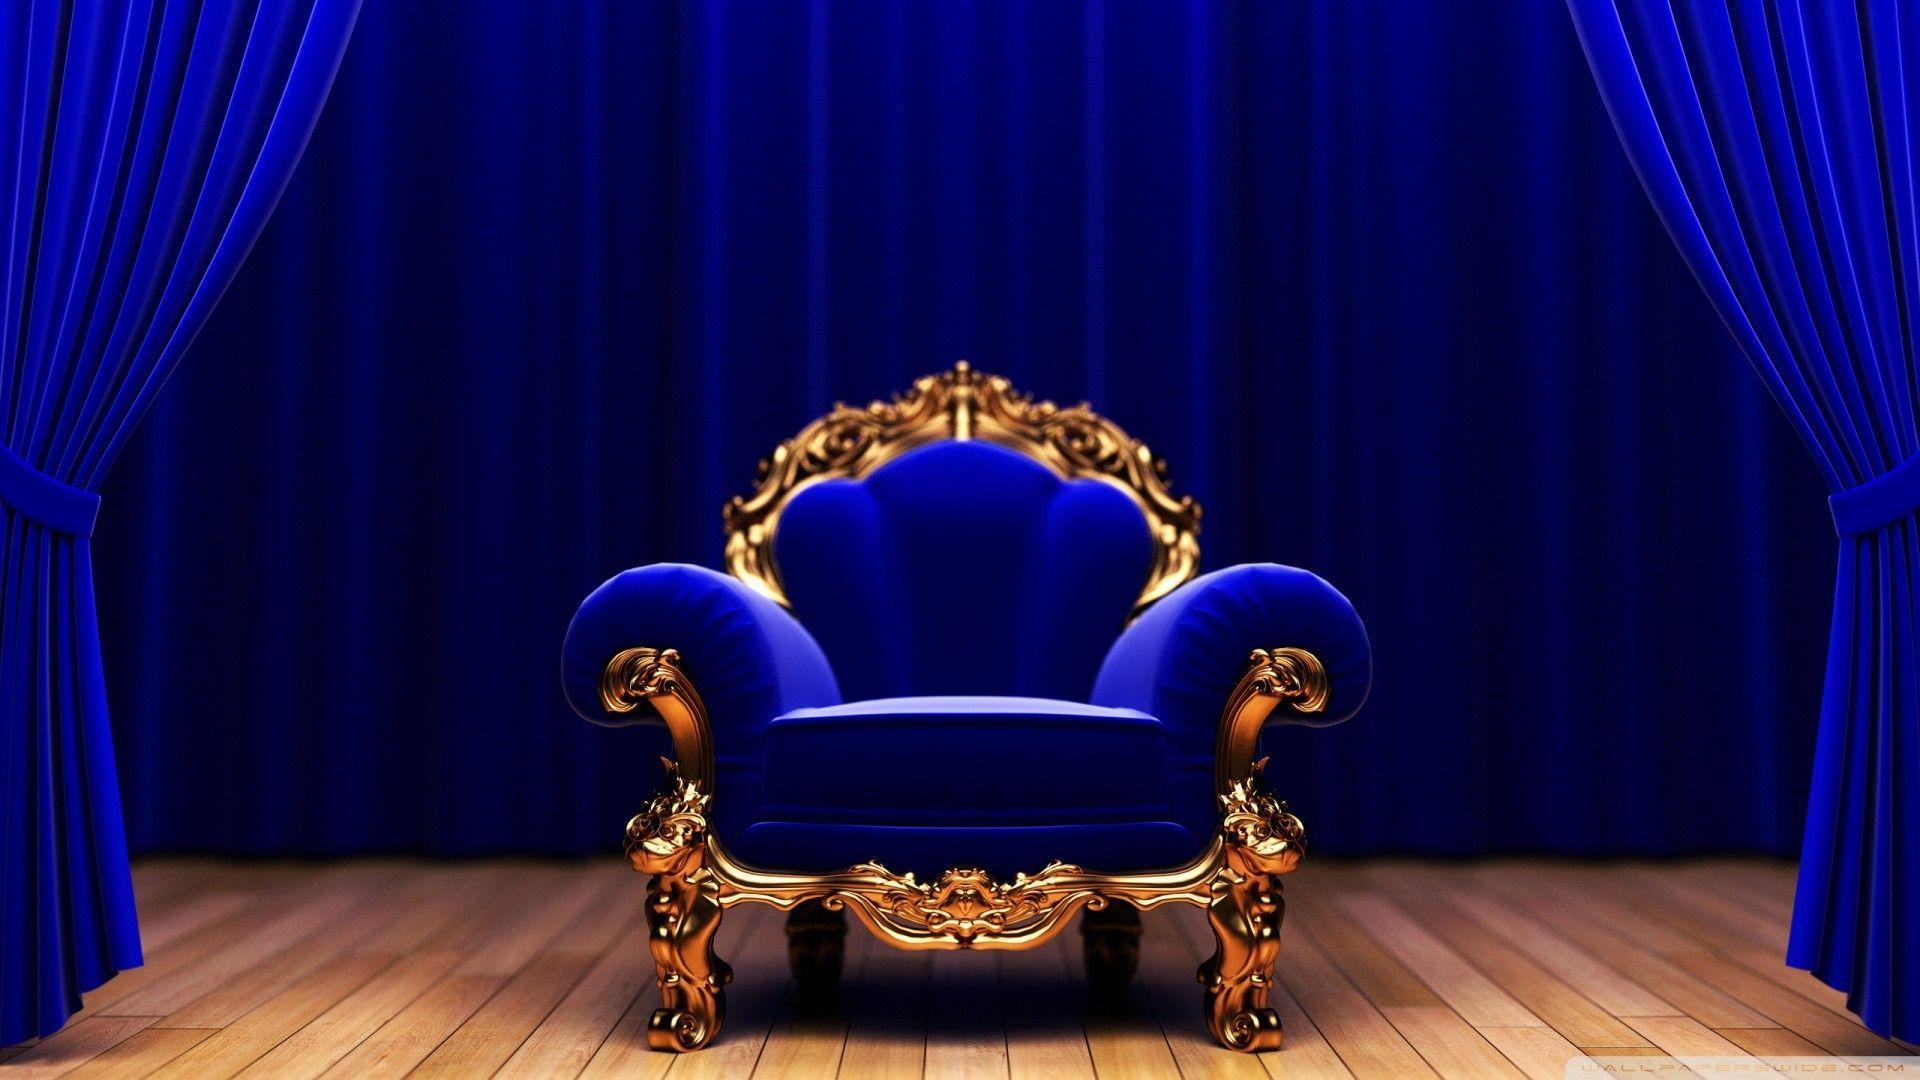 Ghế ngai vàng được thiết kế độc đáo với chi tiết tinh tế là điểm nhấn của màn hình. Chính sự trang trọng và lịch thiệp của phòng khách hoàng gia đưa bạn bước vào thế giới của Nhà vua/Hoàng đế.